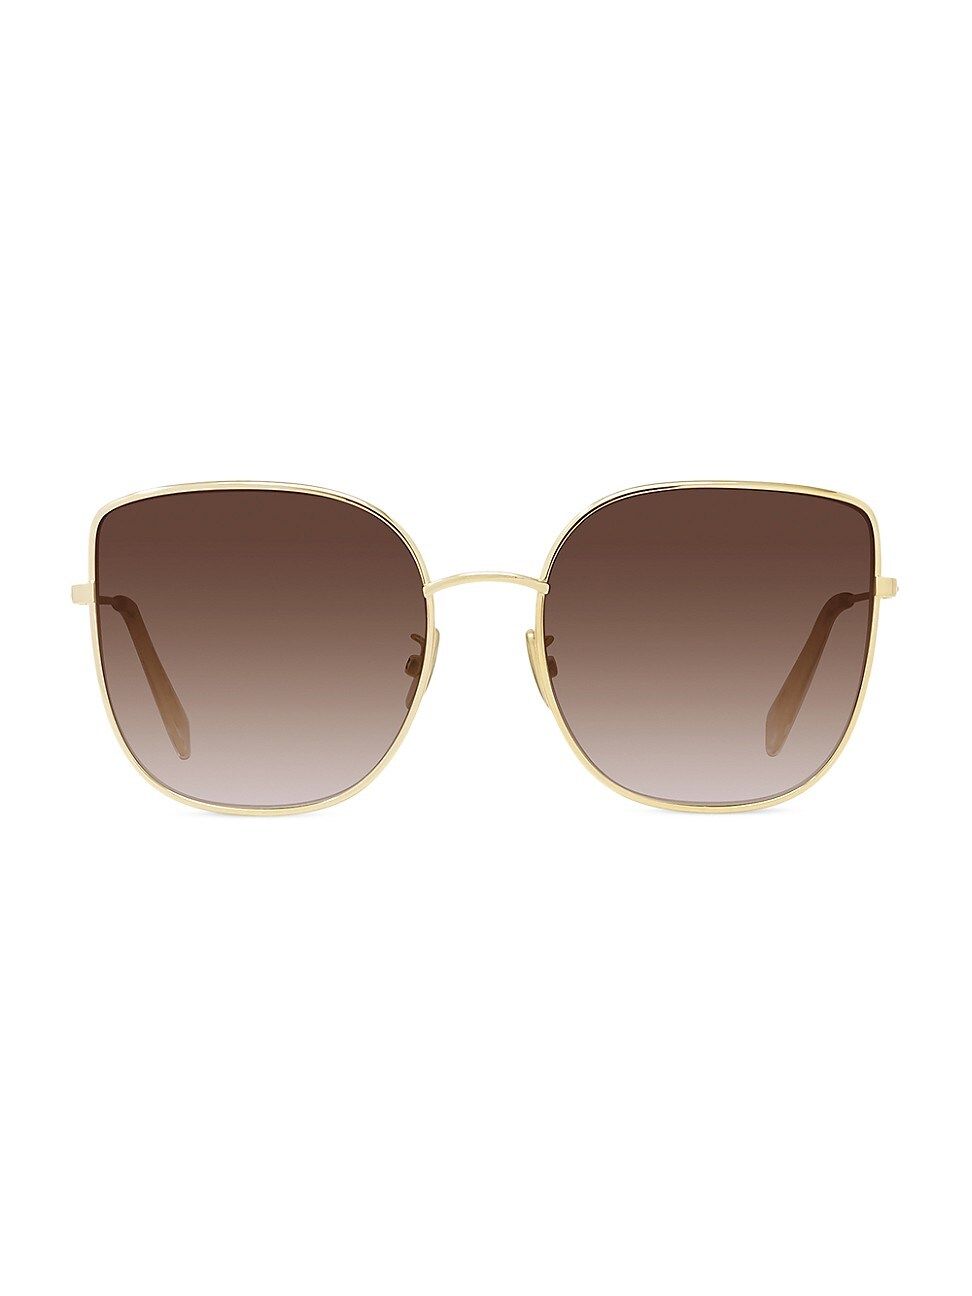 CELINE Women's 59MM Metal Cat Eye Sunglasses - Gold | Saks Fifth Avenue